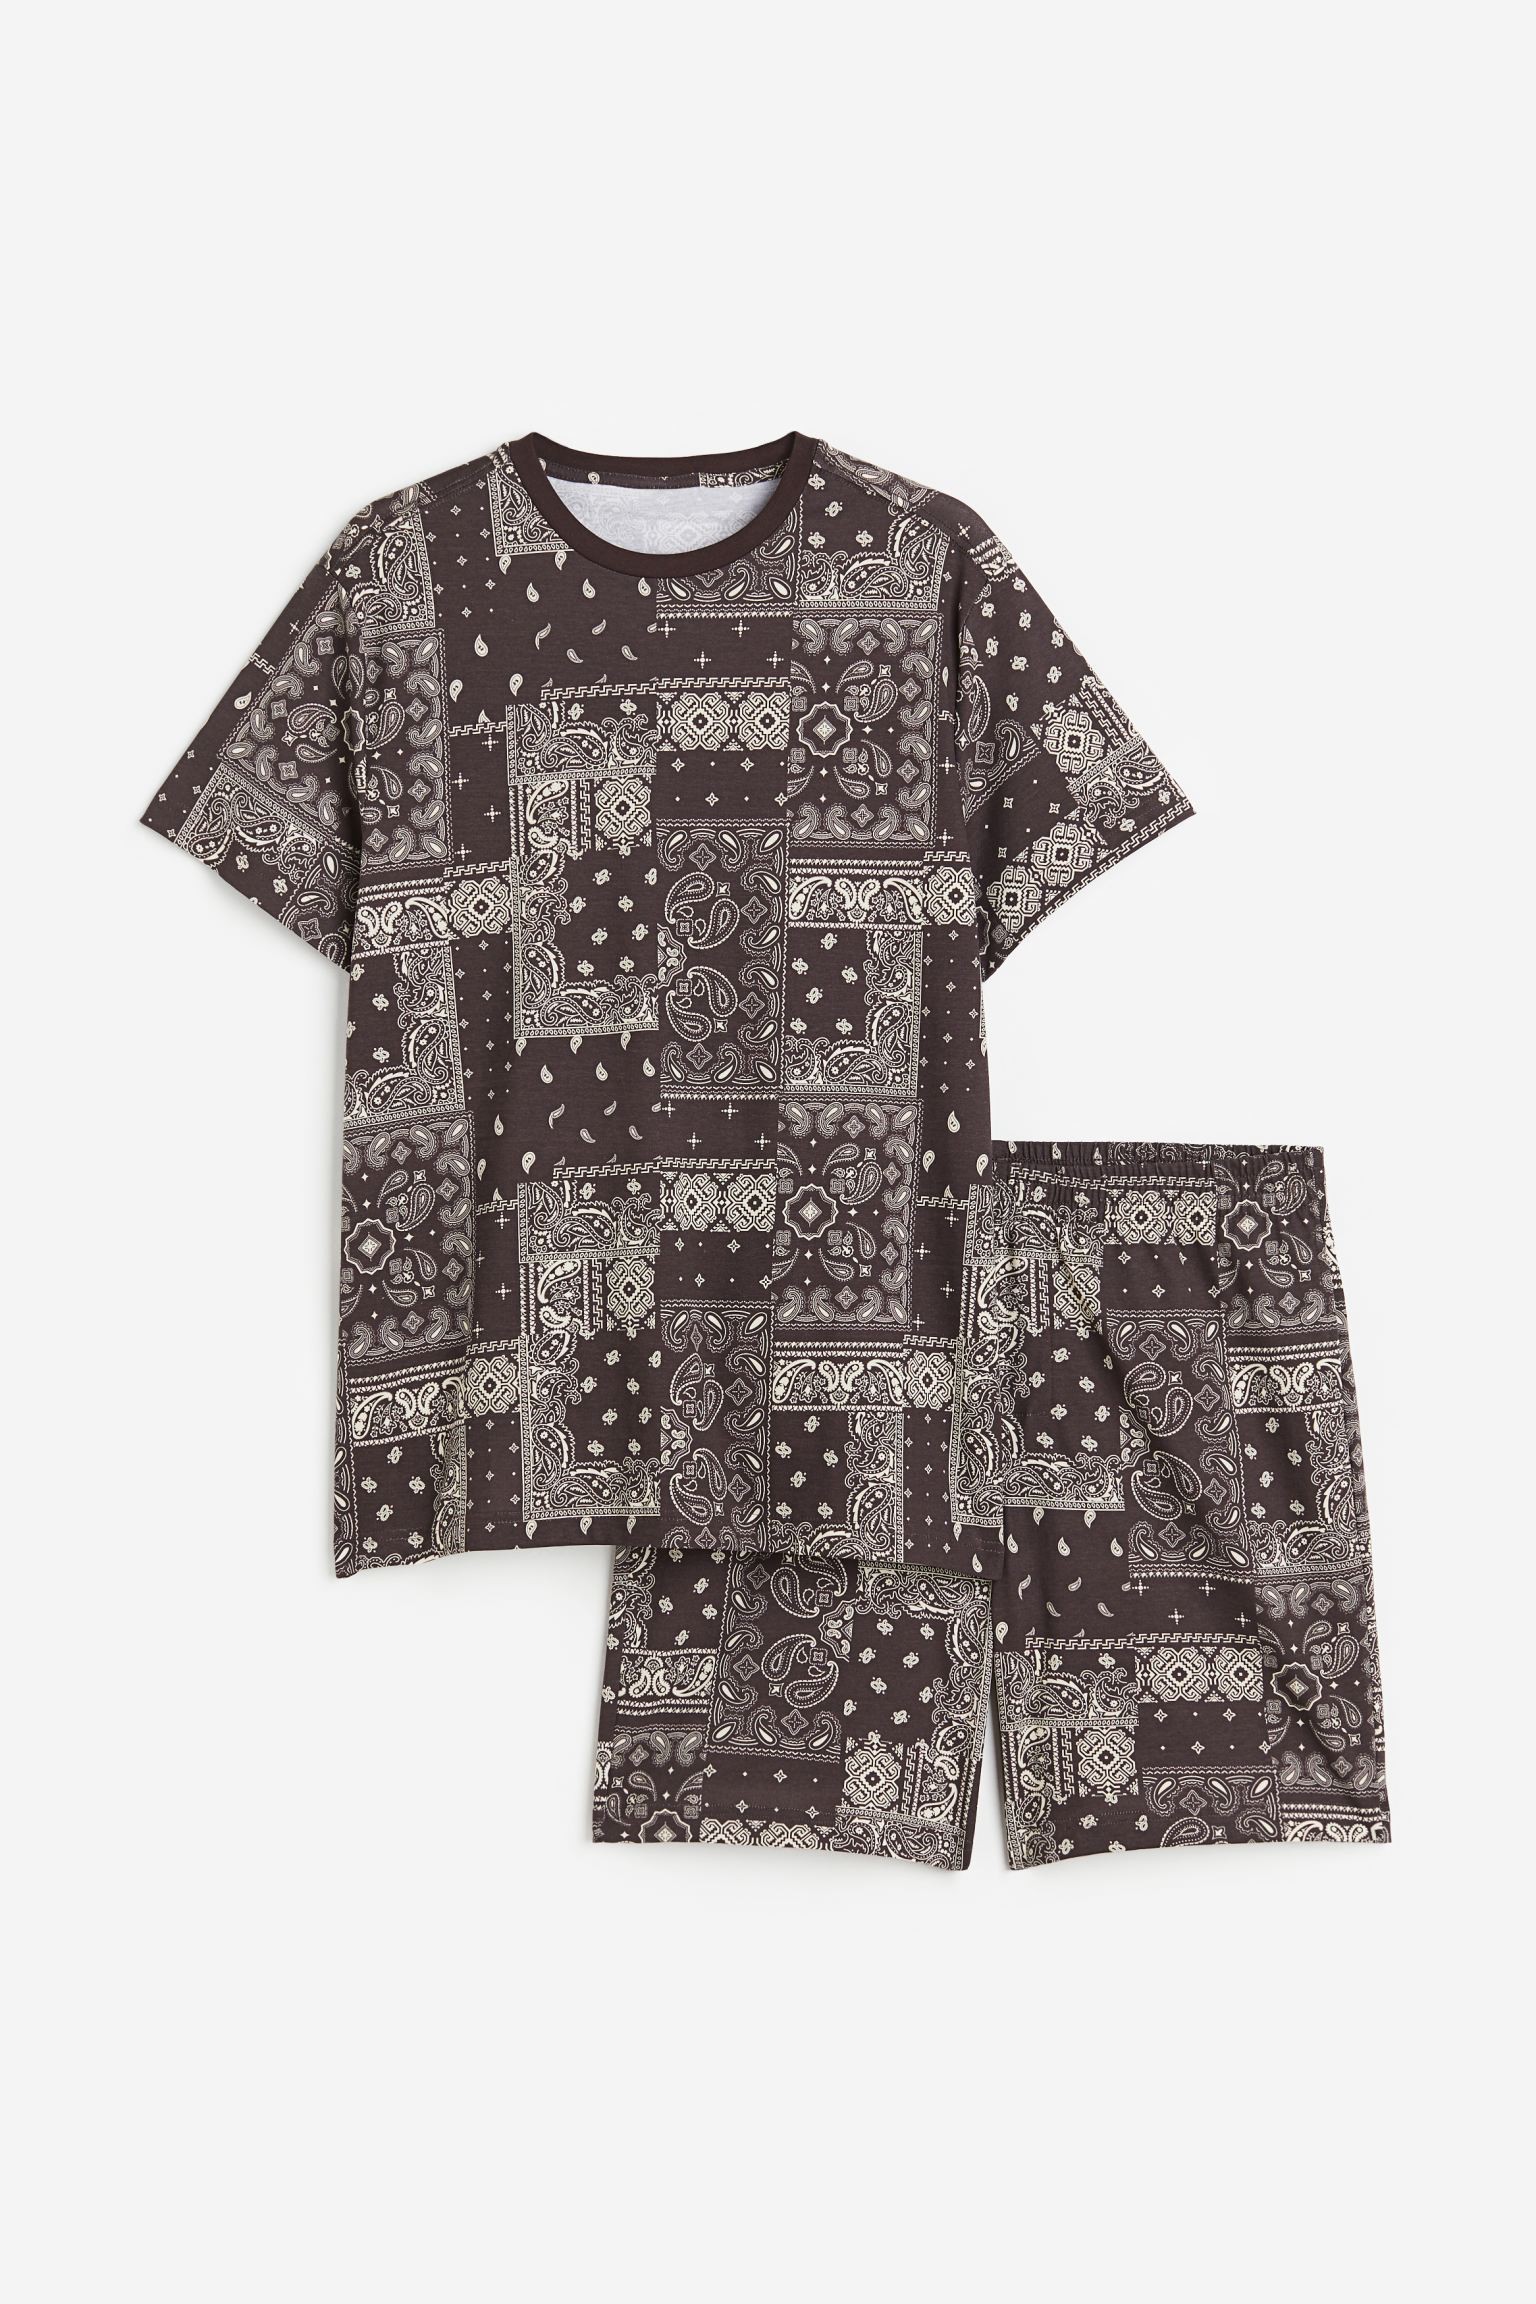 H&M Home Пижама с футболкой и шортами обычного кроя, Браун/Пейсли, Разные размеры 1116123011 | 1116123011